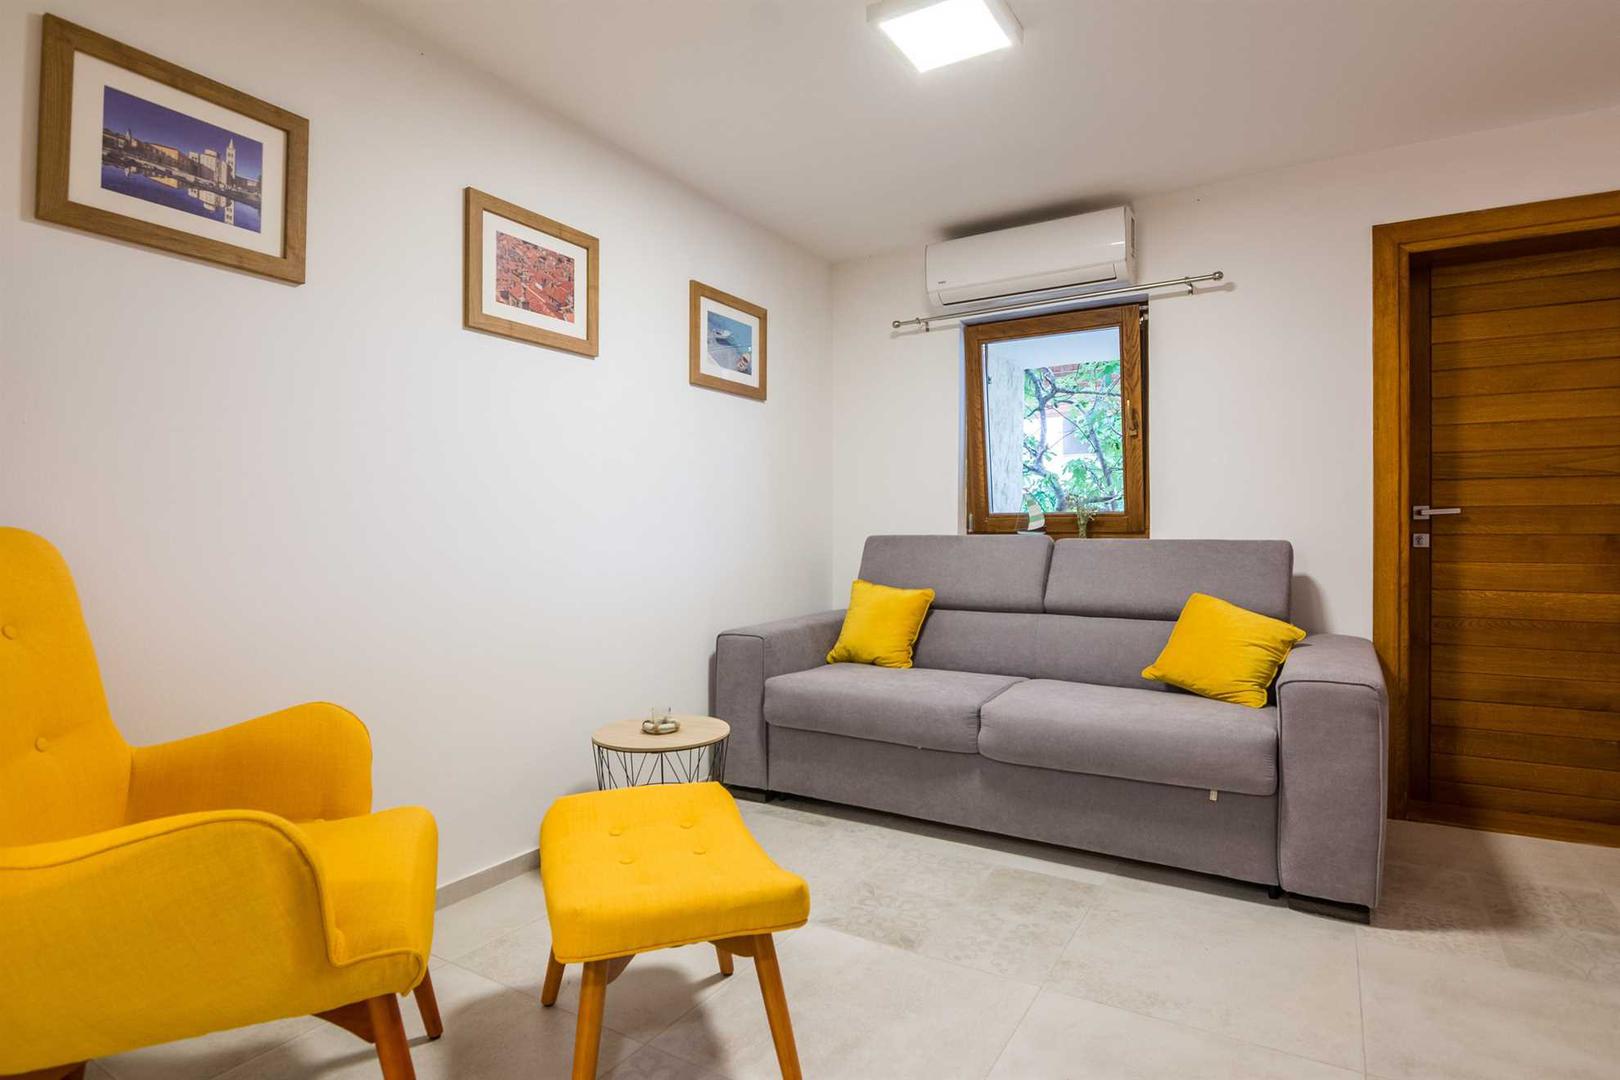 Apartman se izajmljuje tijekom ljetnih mjeseci po cijeni od 70 eura po danu